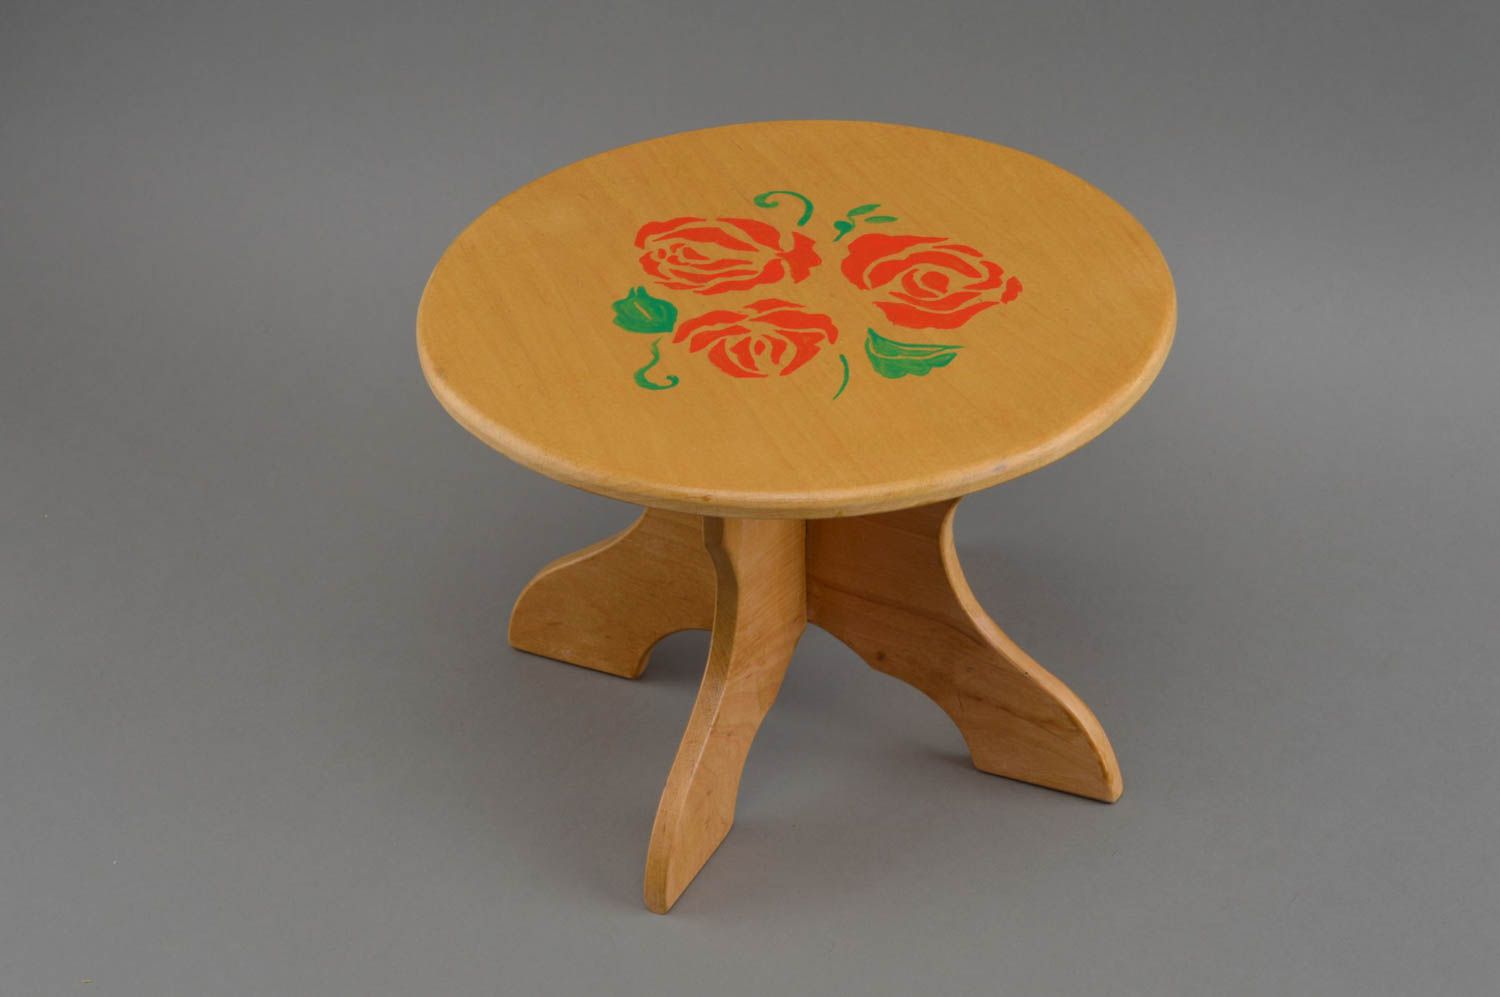 Кукольный стол из дерева круглый декоративный оригинальный ручной работы фото 2